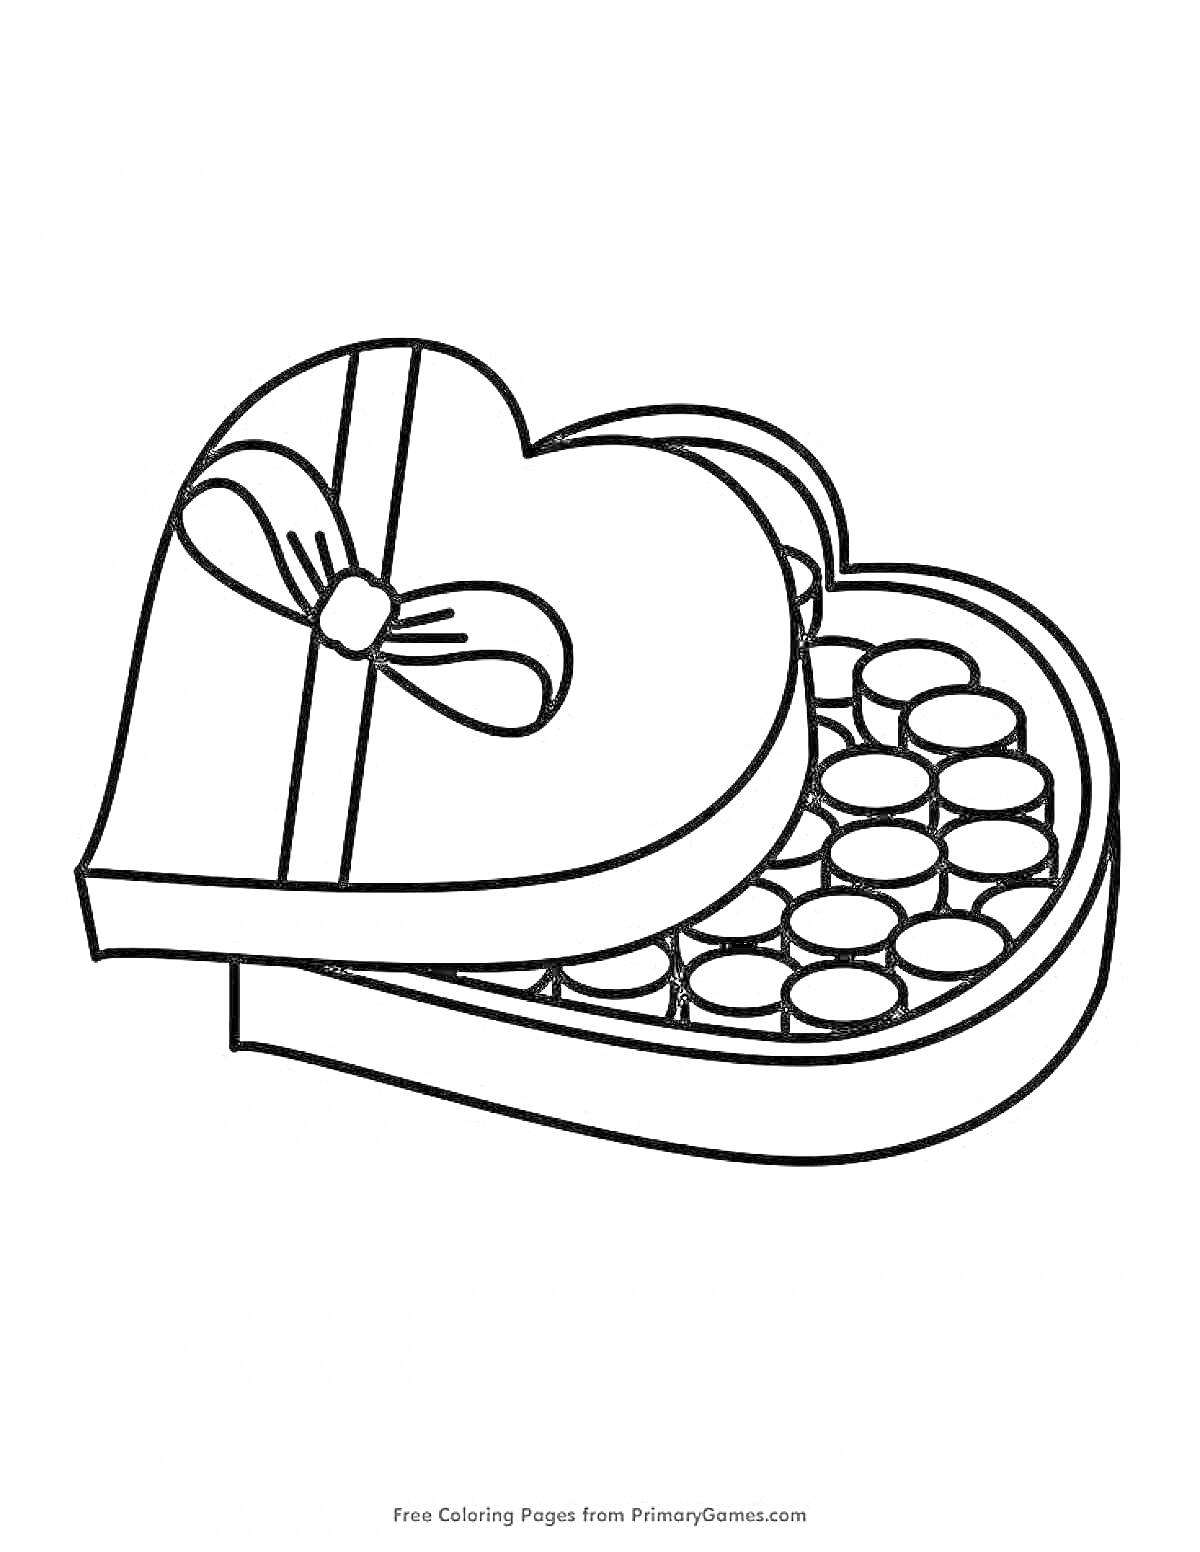 РаскраскаКоробка конфет в форме сердца с бантом